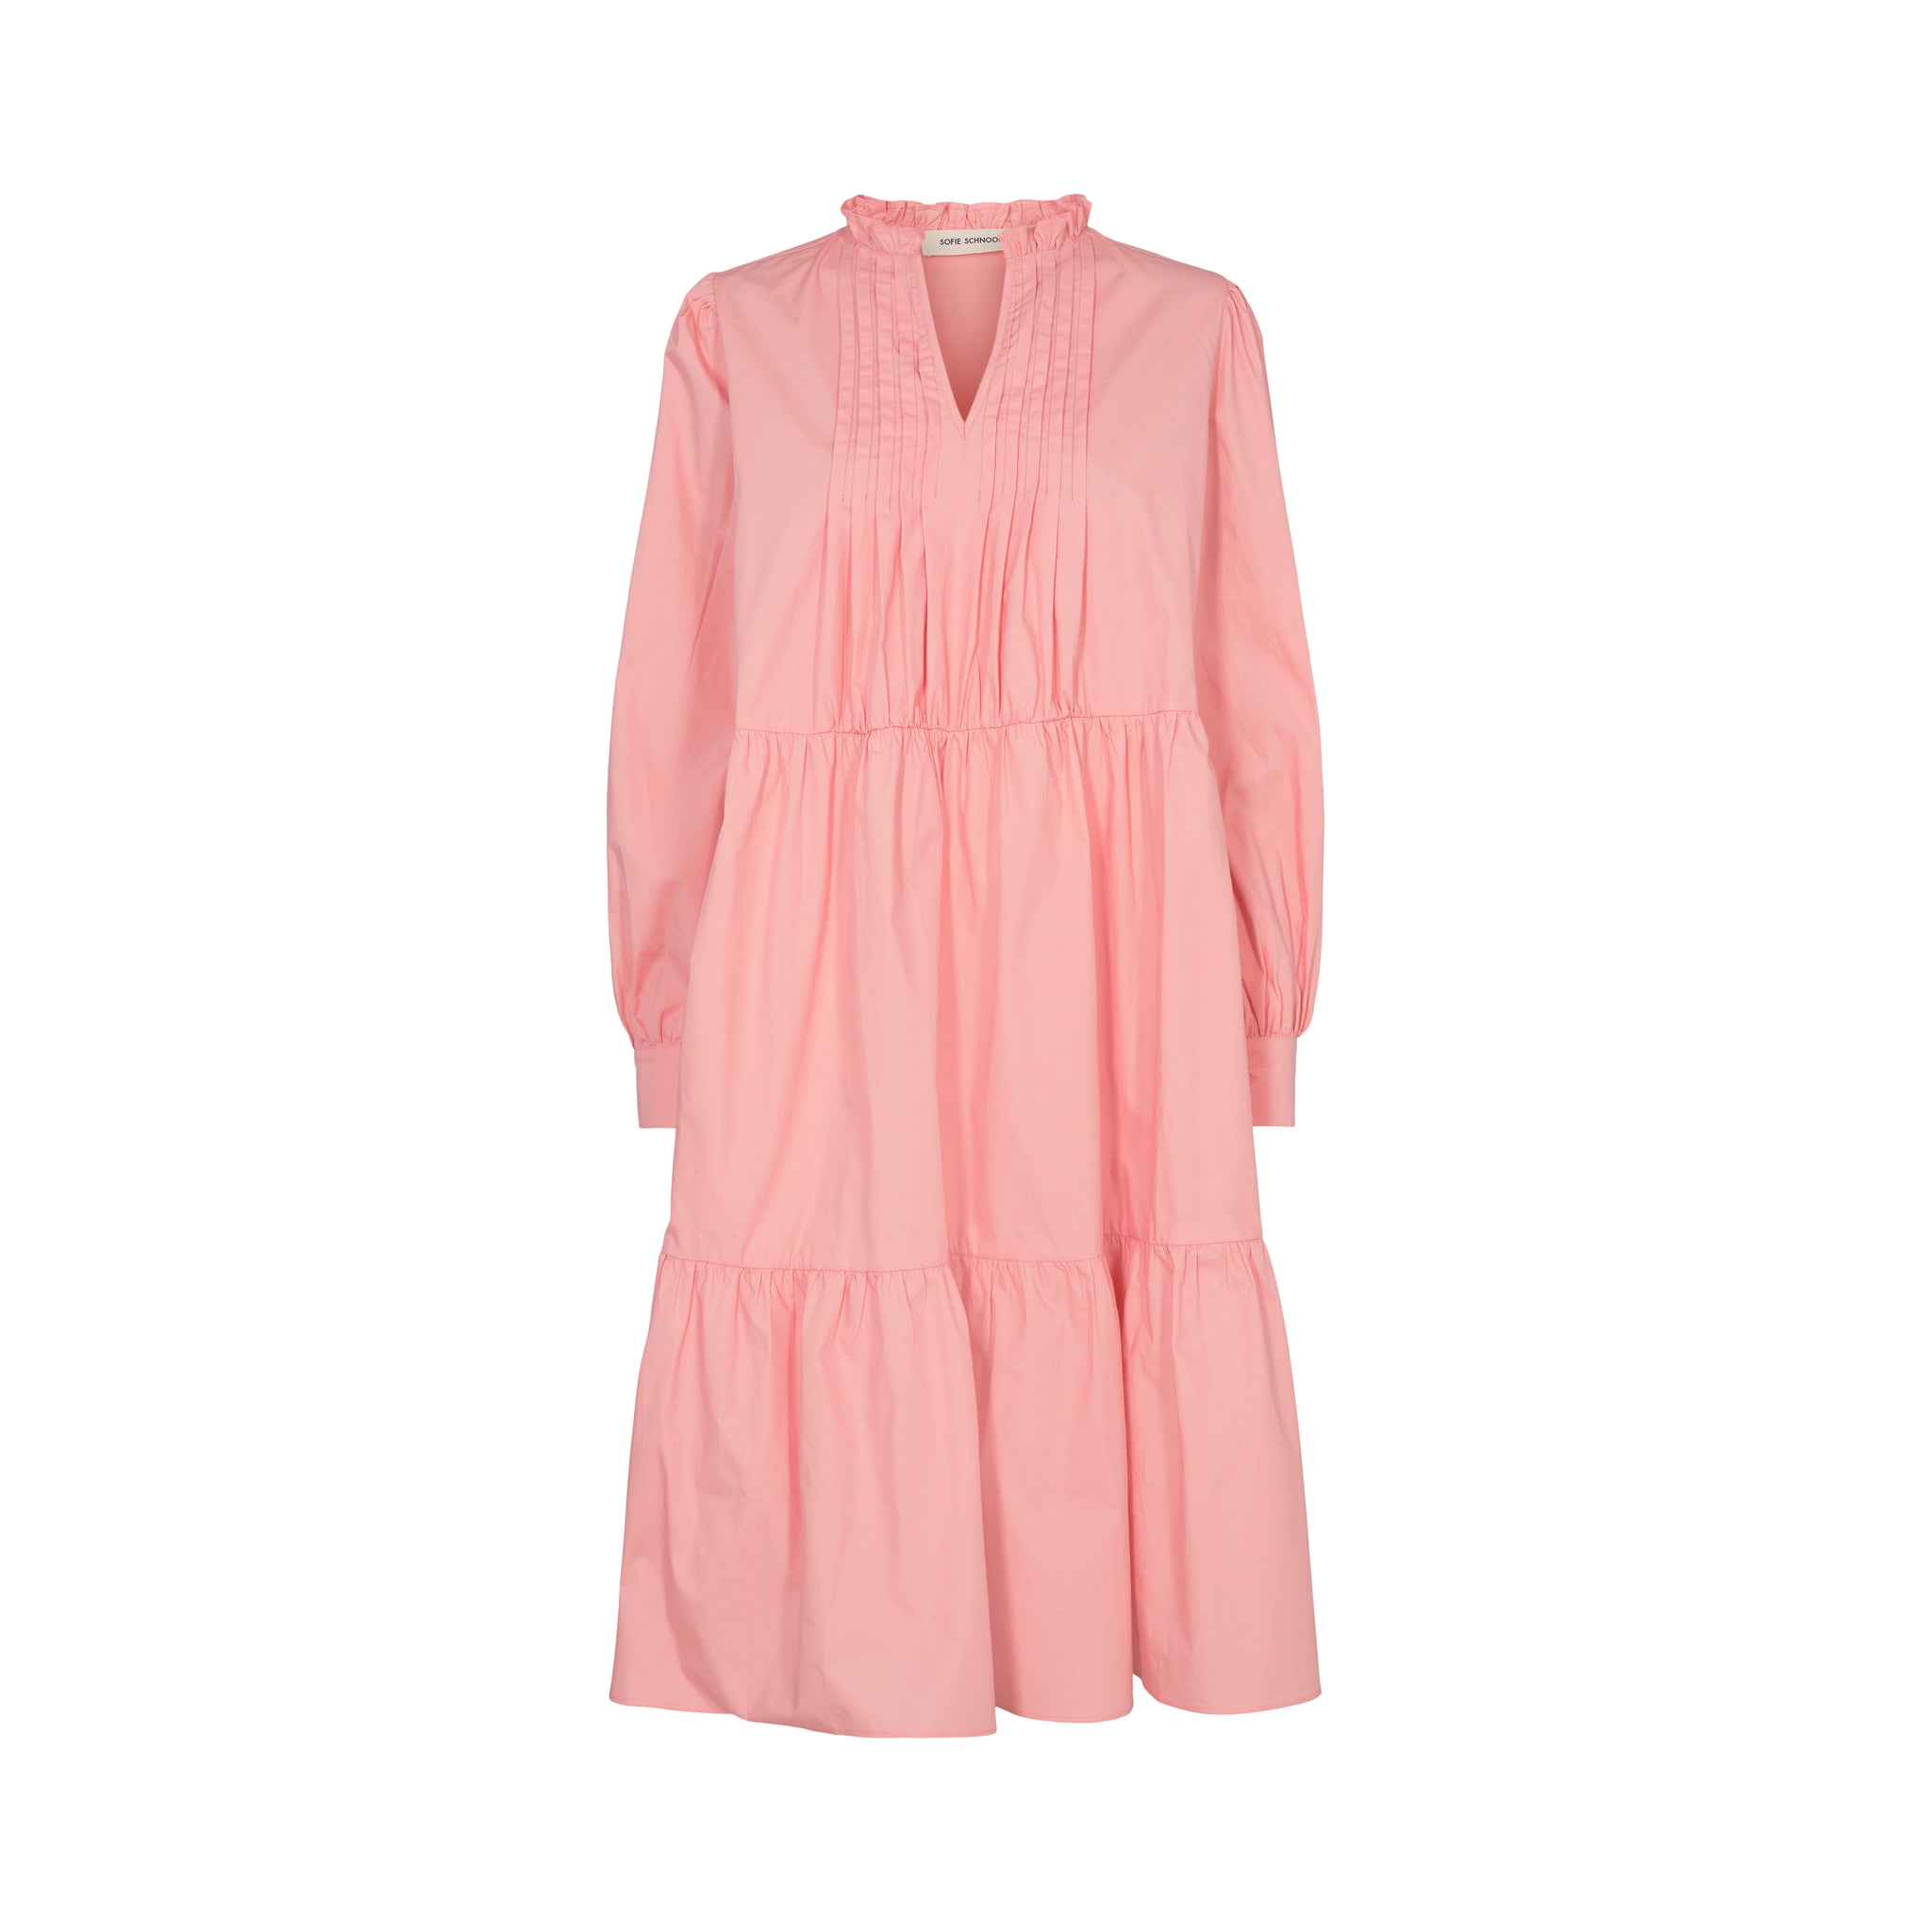 Sofie Schnoor - Dress LS S221294 - Coral Pink